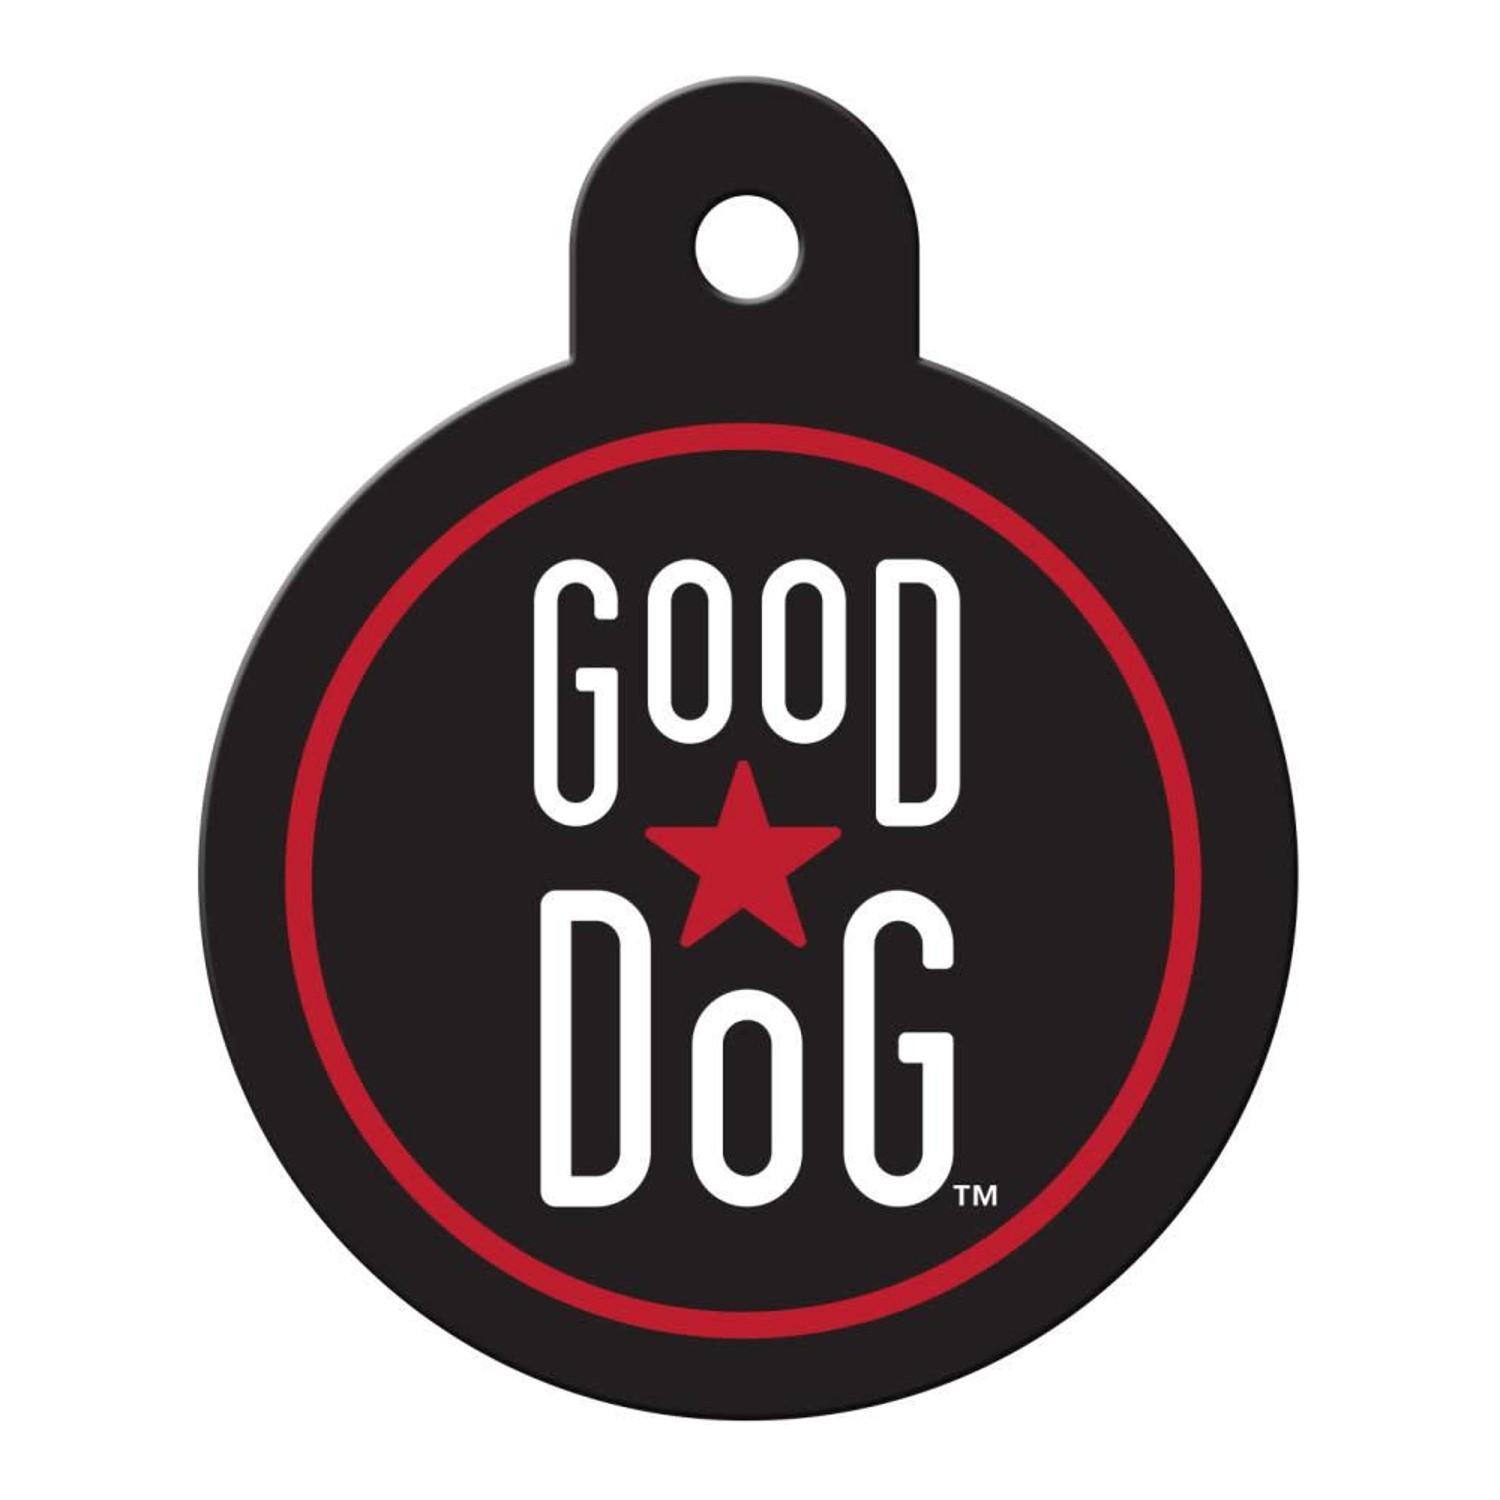 Good Dog Circle Large Engravable Pet I.D. Tag